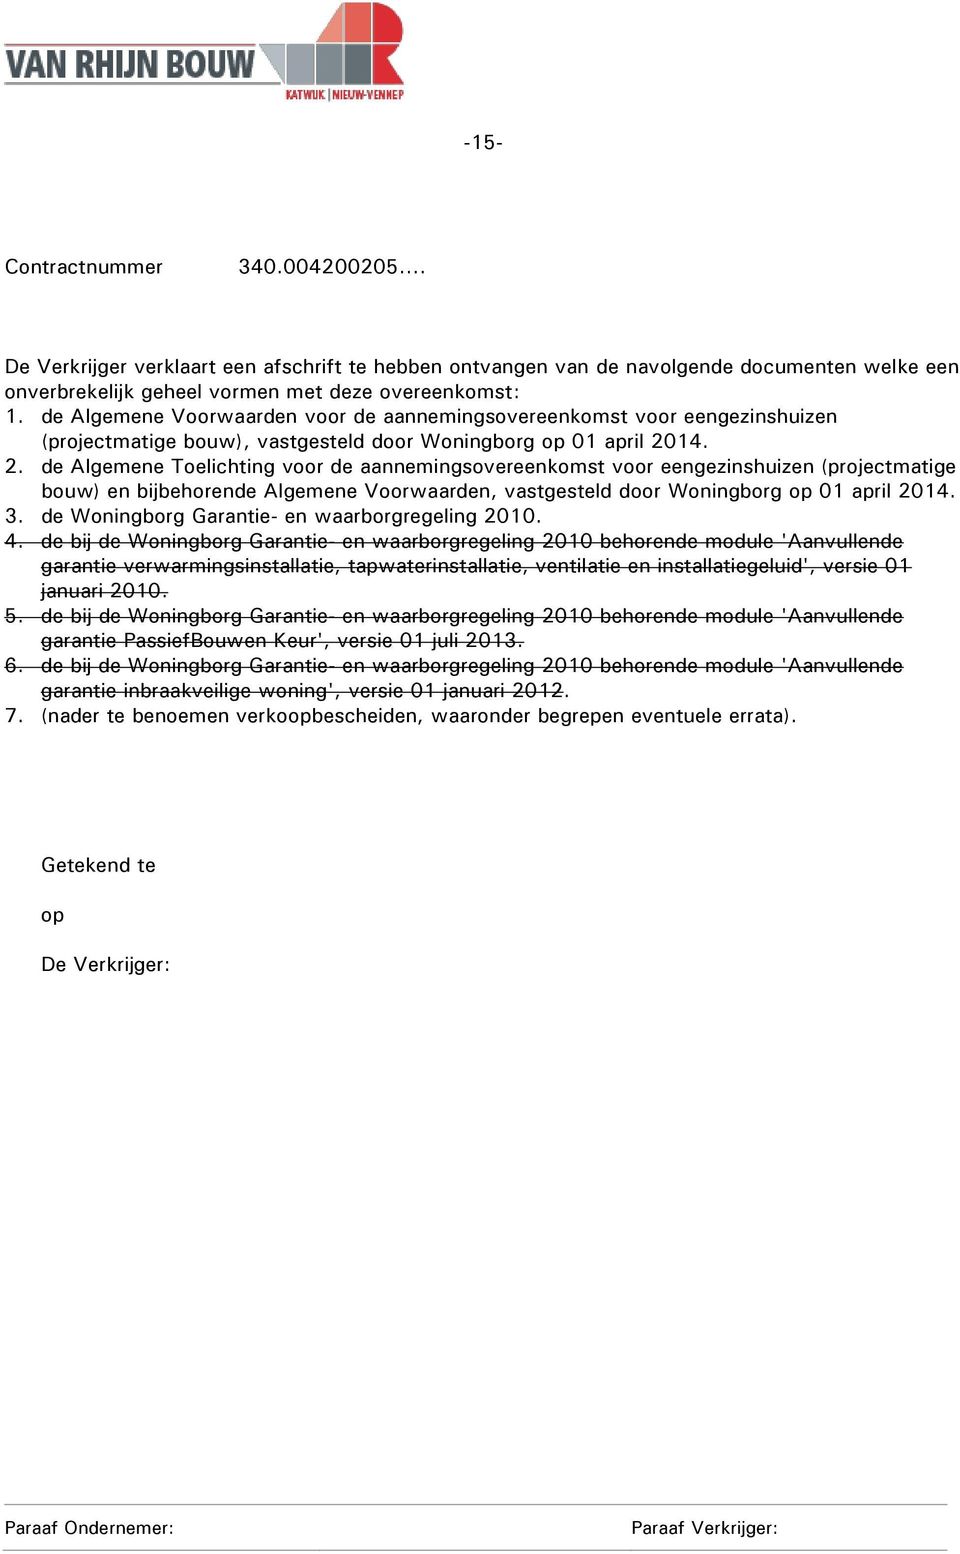 14. 2. de Algemene Toelichting voor de aannemingsovereenkomst voor eengezinshuizen (projectmatige bouw) en bijbehorende Algemene Voorwaarden, vastgesteld door Woningborg op 01 april 2014. 3.